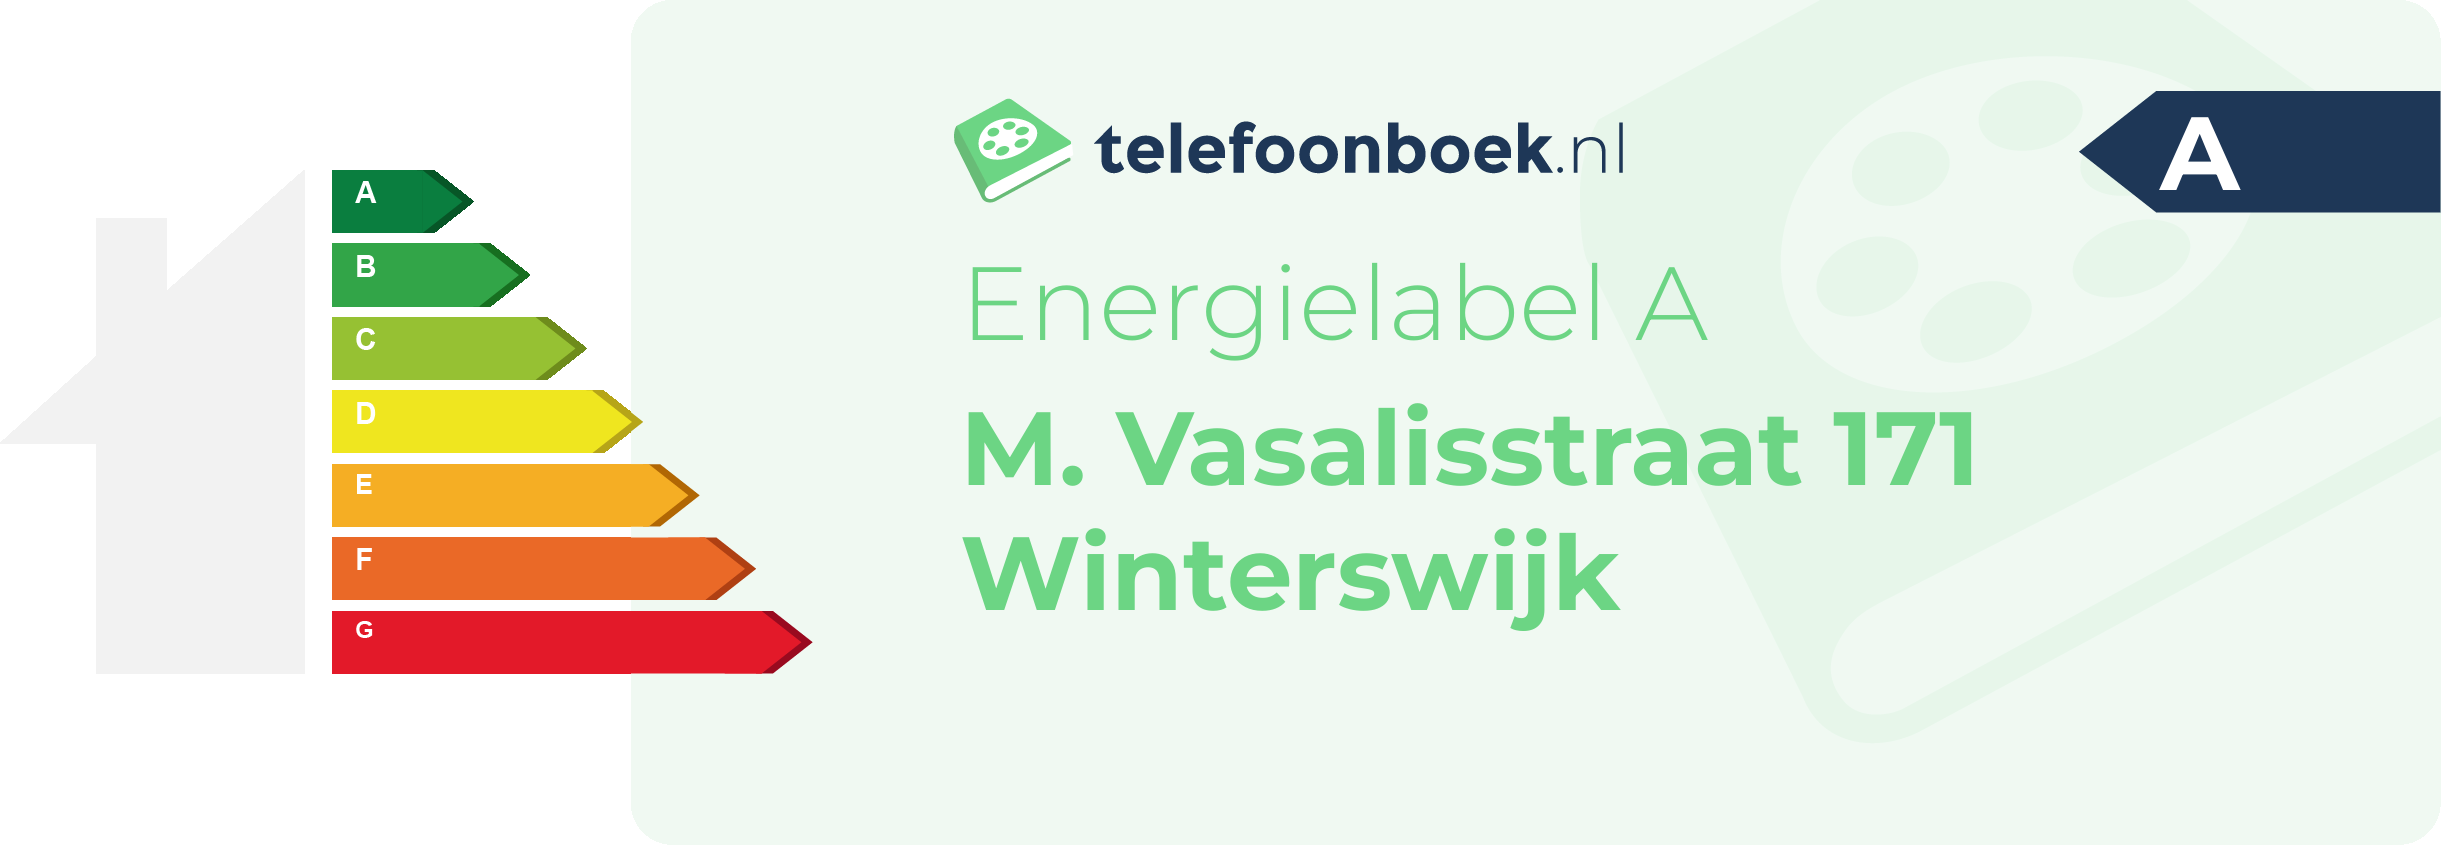 Energielabel M. Vasalisstraat 171 Winterswijk